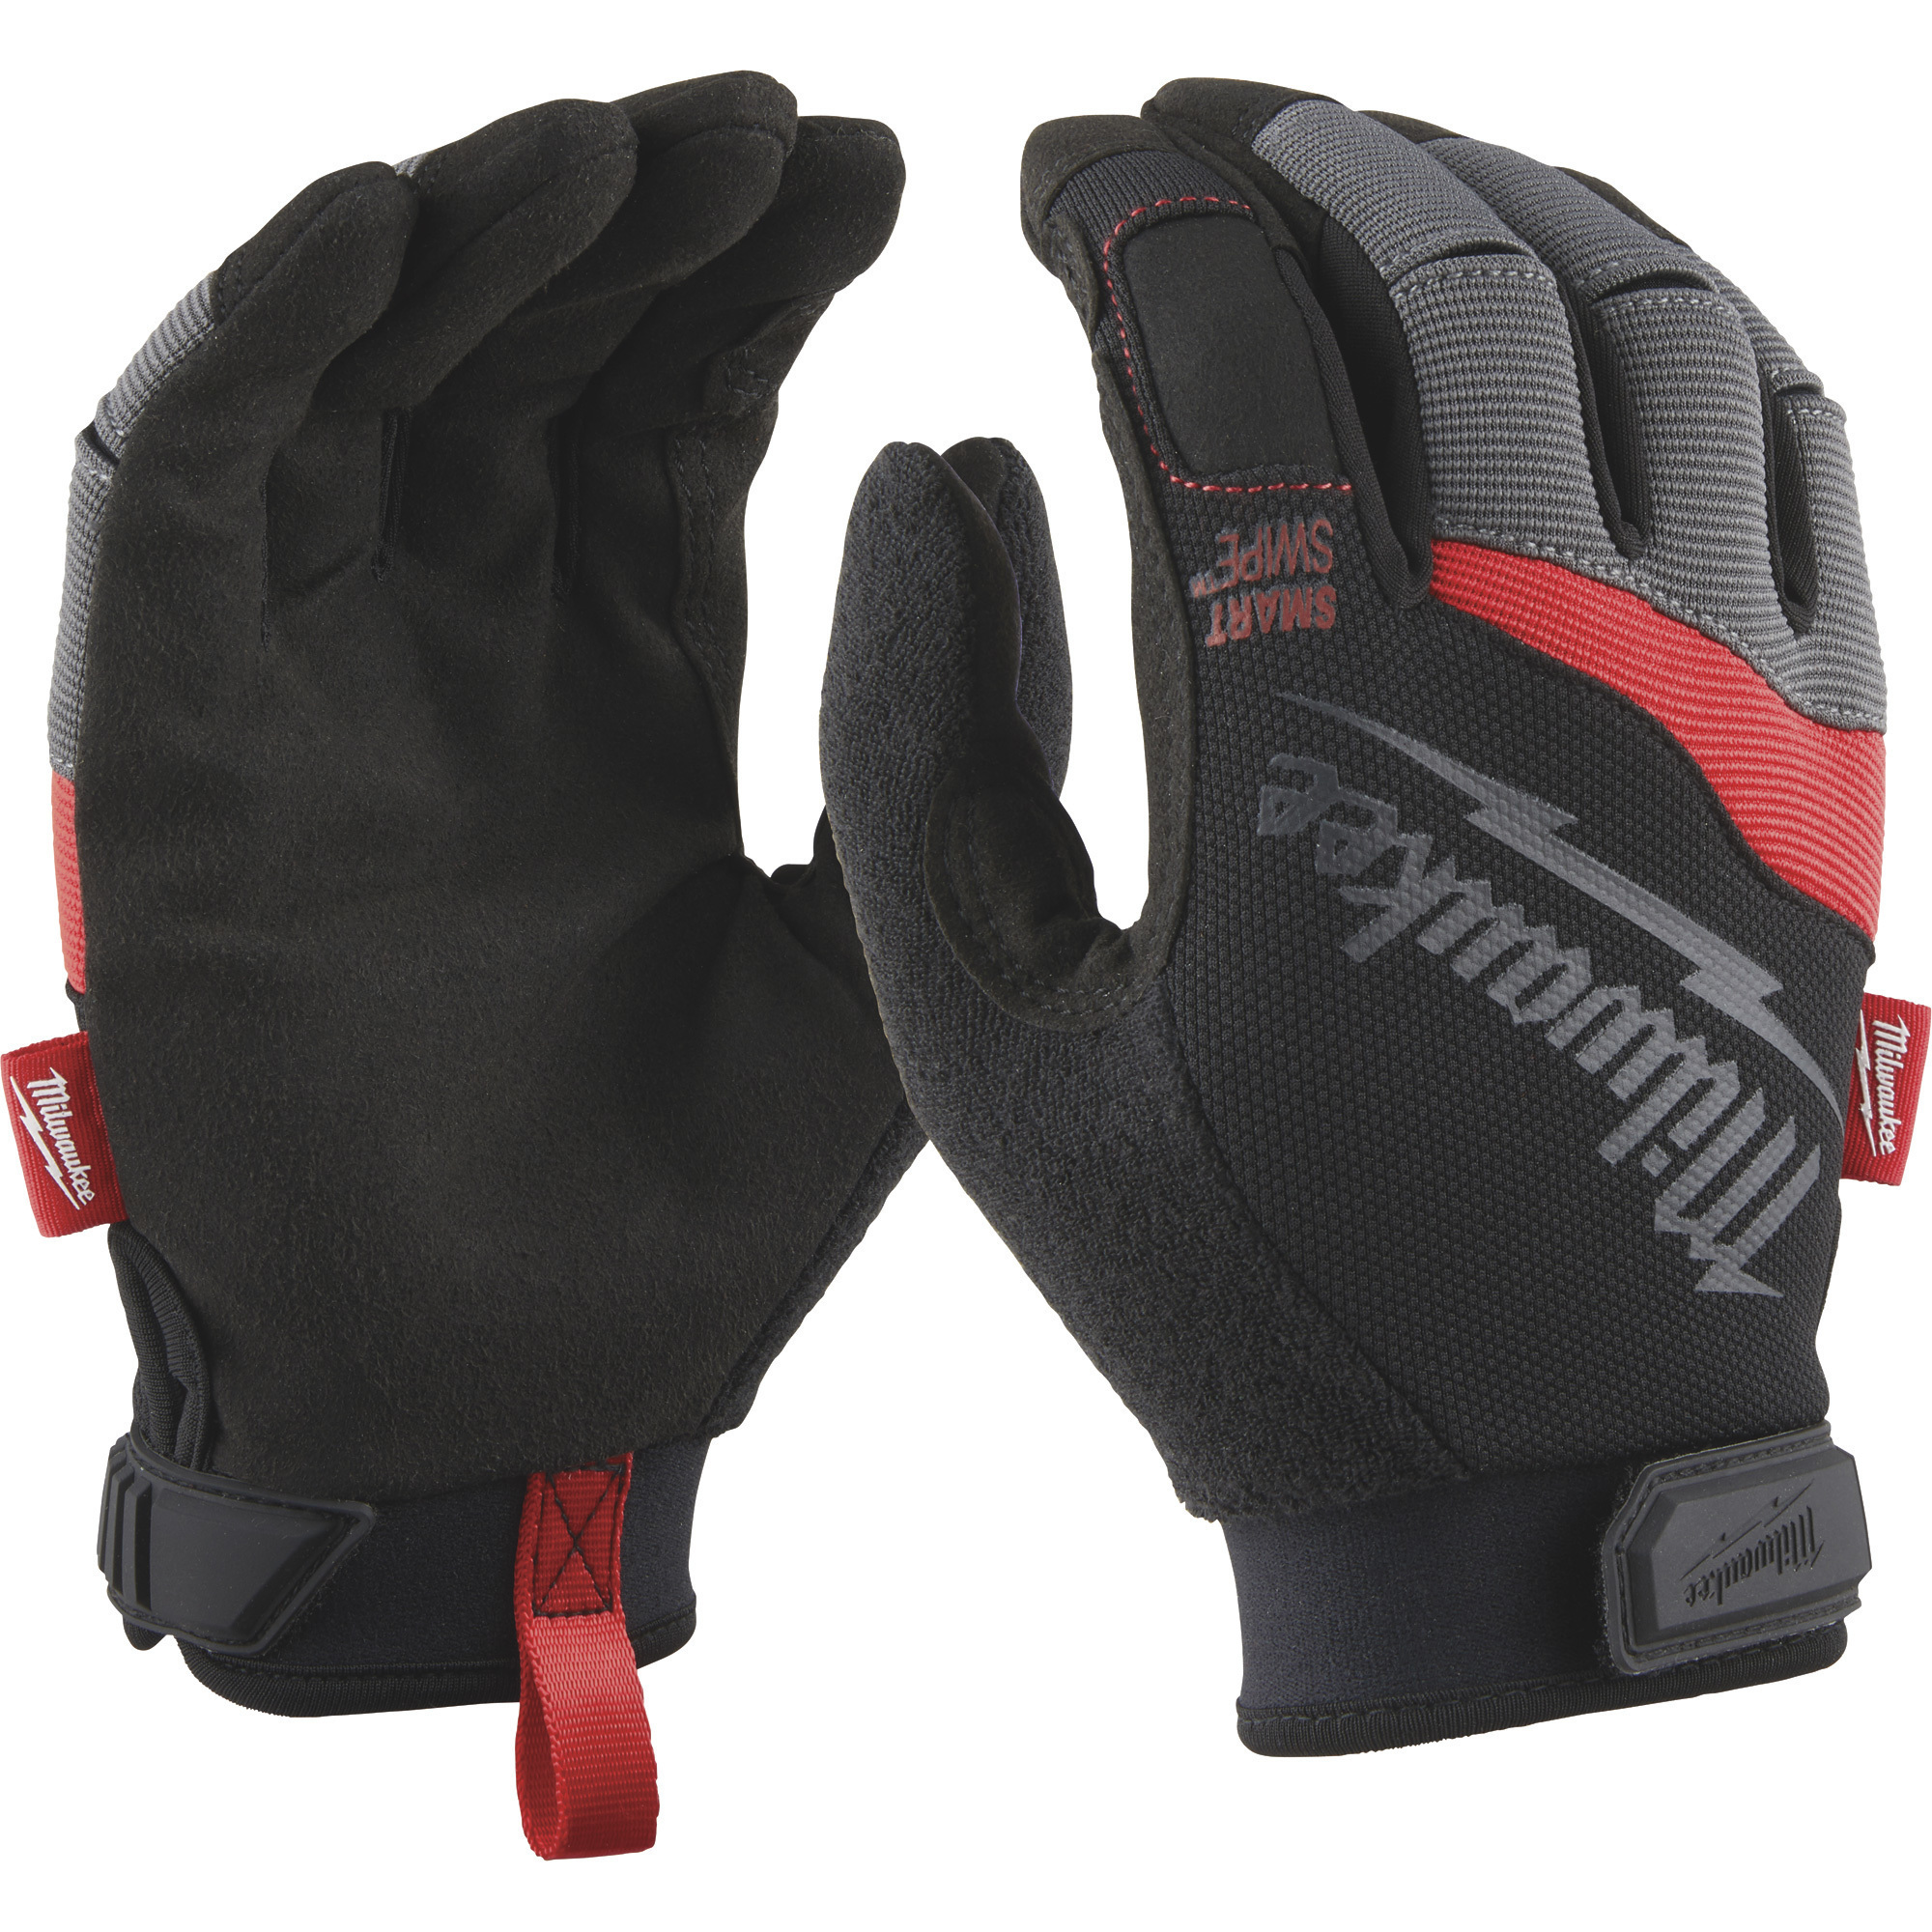 Milwaukee Men's Performance Work Gloves, Black/Gray/Red, Large, Model 48-22-8722